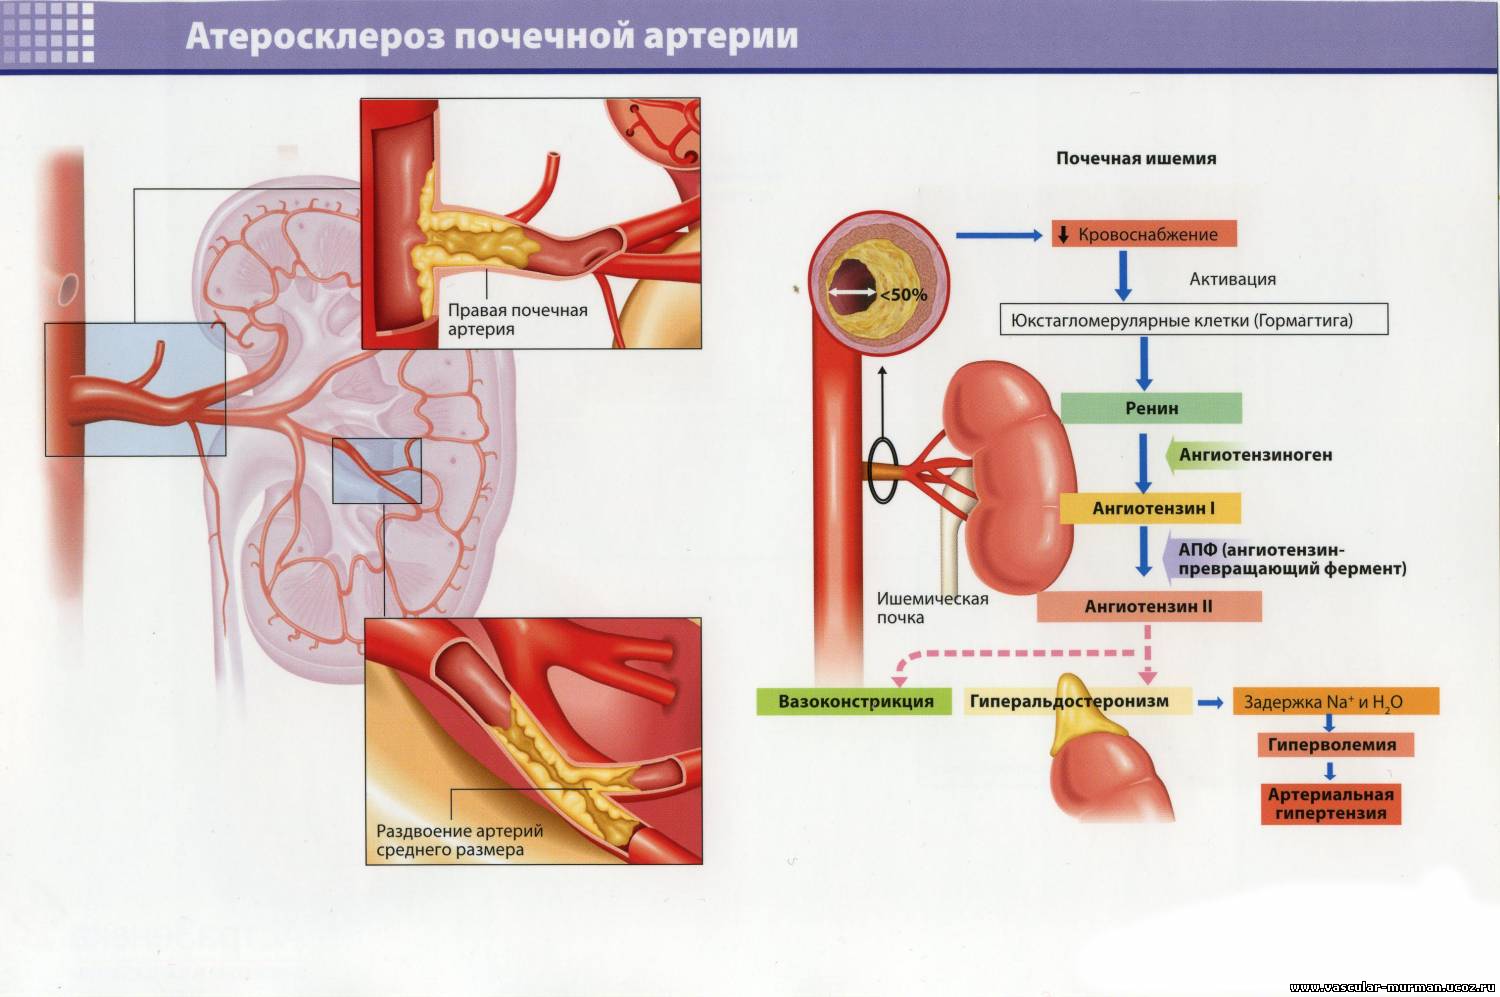 Тромбоз почечных вен. Атеросклероз артерий почек почечная форма. Осложнения атеросклероза артерий почек. Атеросклероз почечных сосудов характеризуется:. Гипертоническая болезнь сосуды почек.